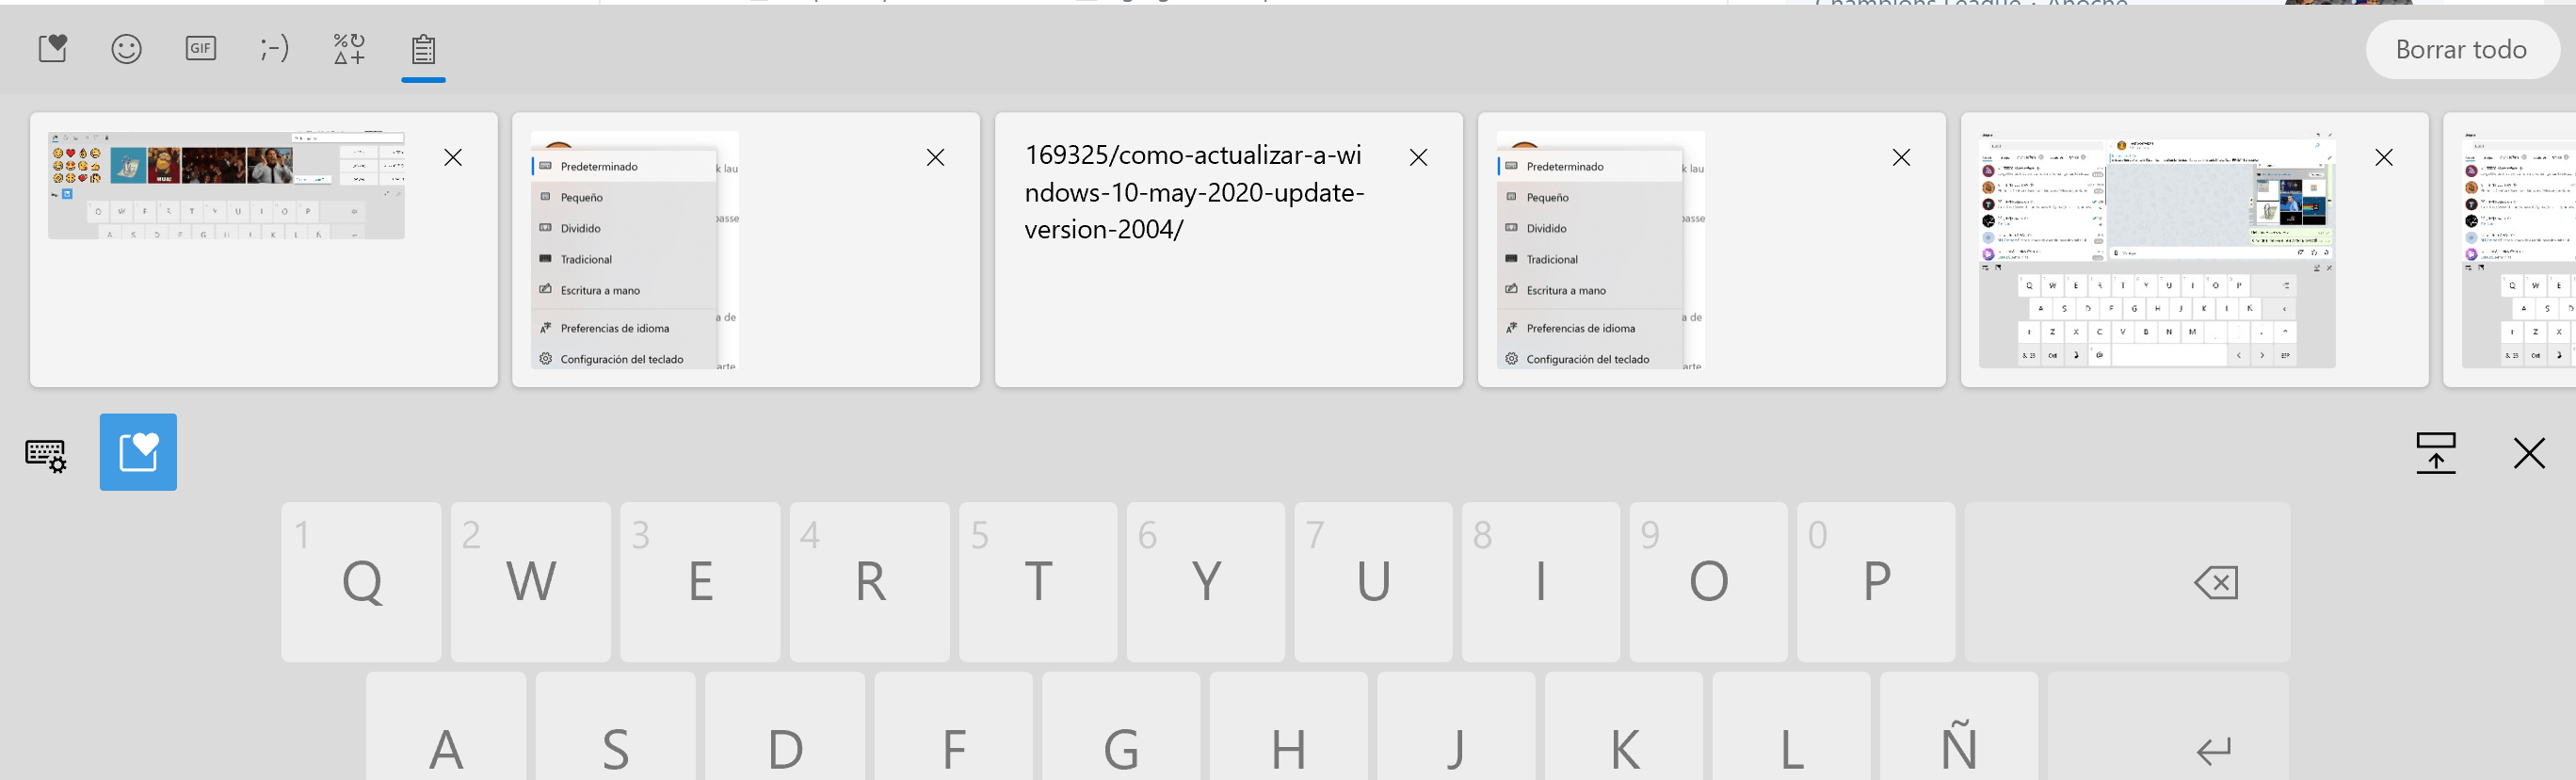 Acceso al portapapeles desde el nuevo teclado de Windows